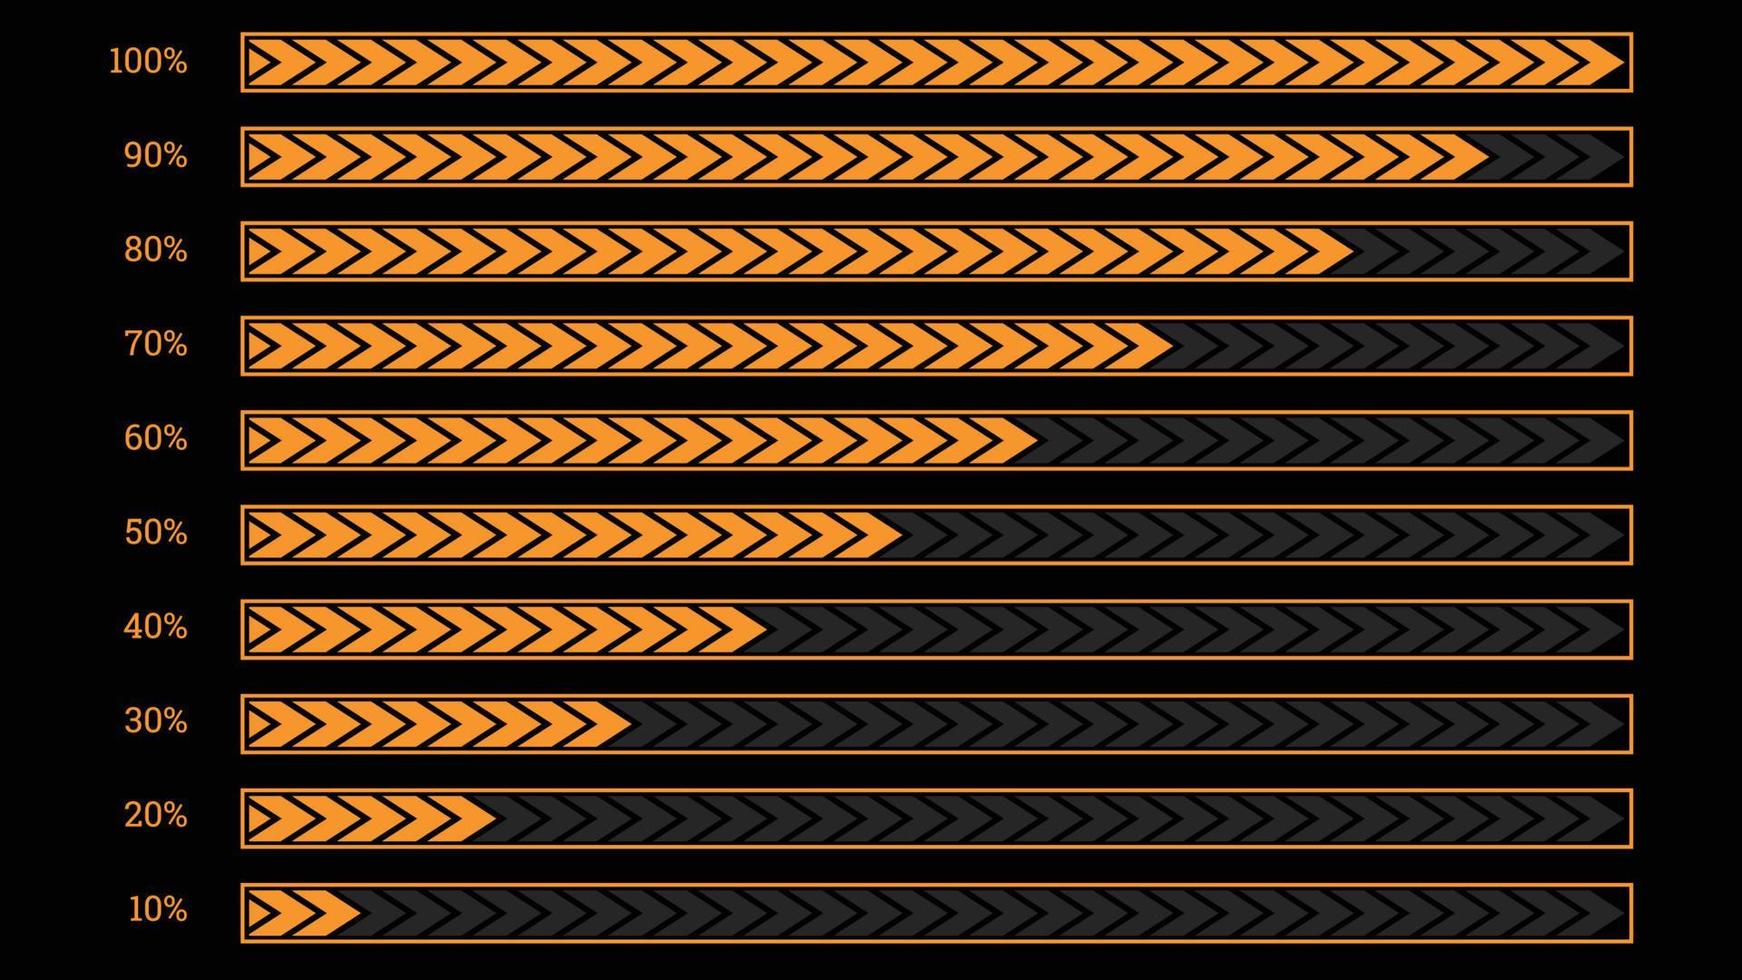 moderna procent infographics objekt i form av orange skärrad stapel vektor